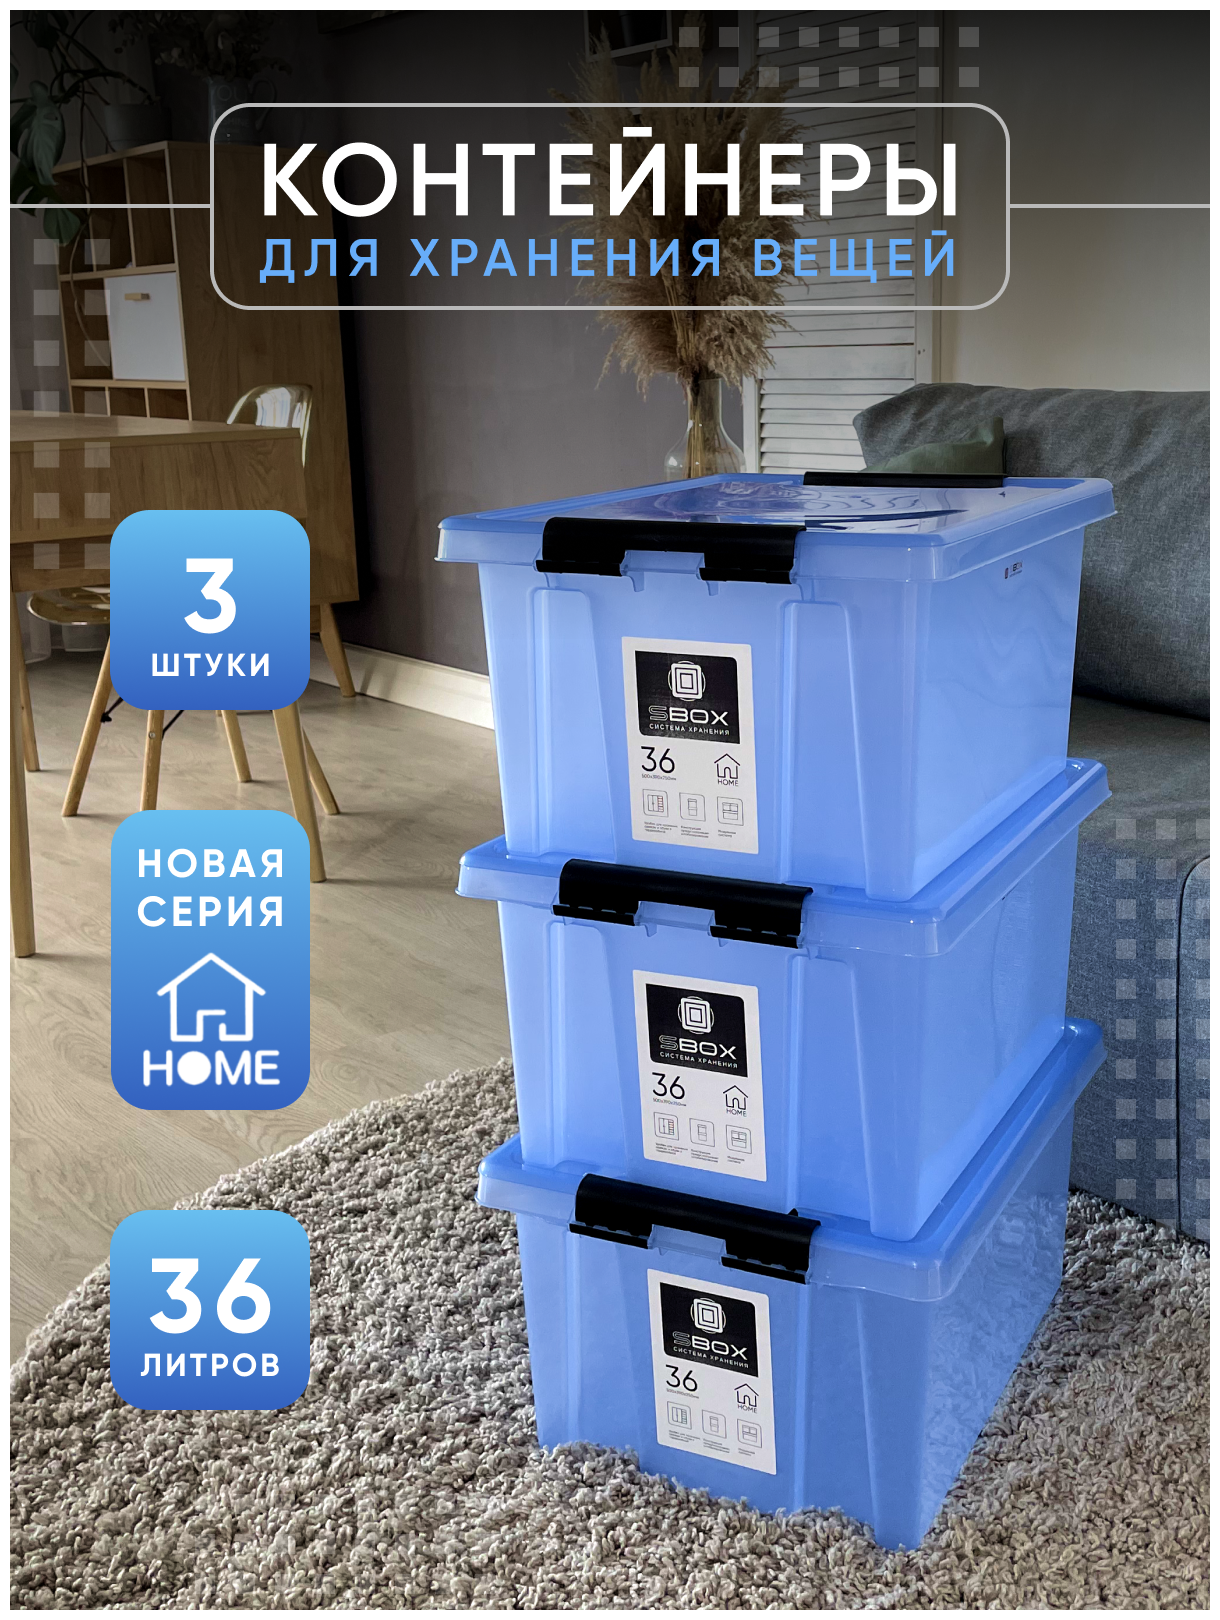 Контейнер пластиковый прозрачный синий с крышкой на защелках для хранения вещей, продуктов или игрушек, емкость 36л, набор 3 шт, SBOX - фотография № 1